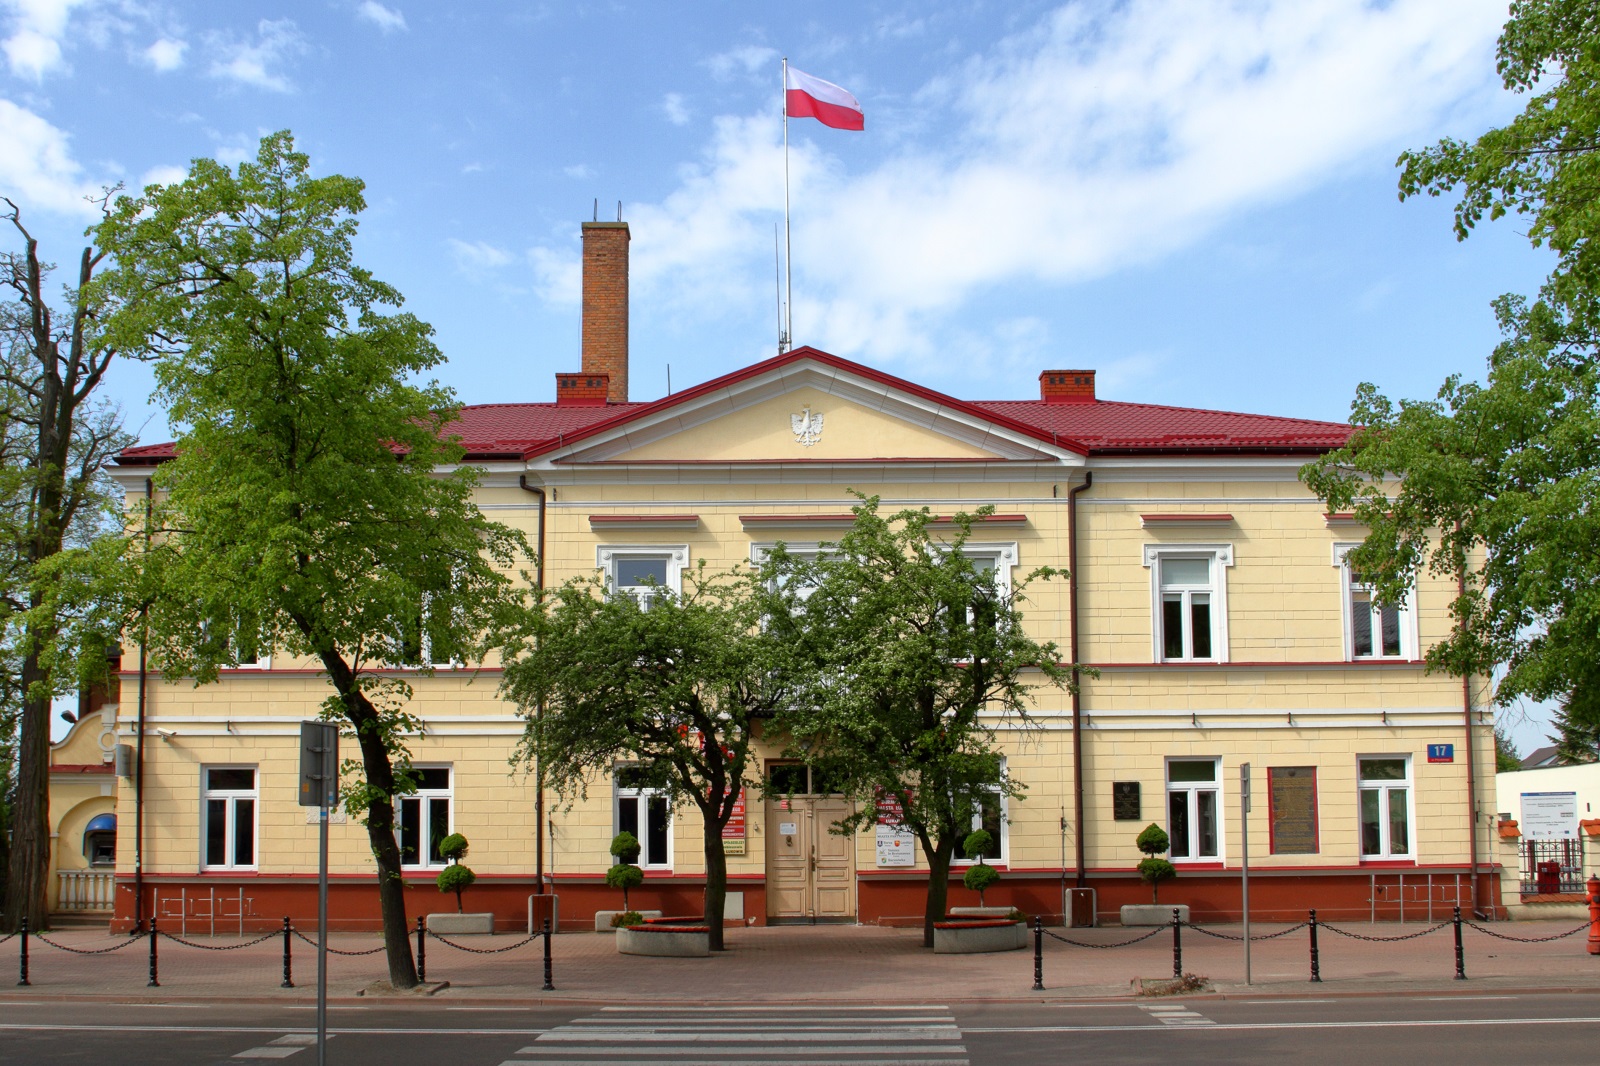 Ograniczona  obsługa klientów w Urzędzie Miasta w Łukowie - Zdjęcie główne